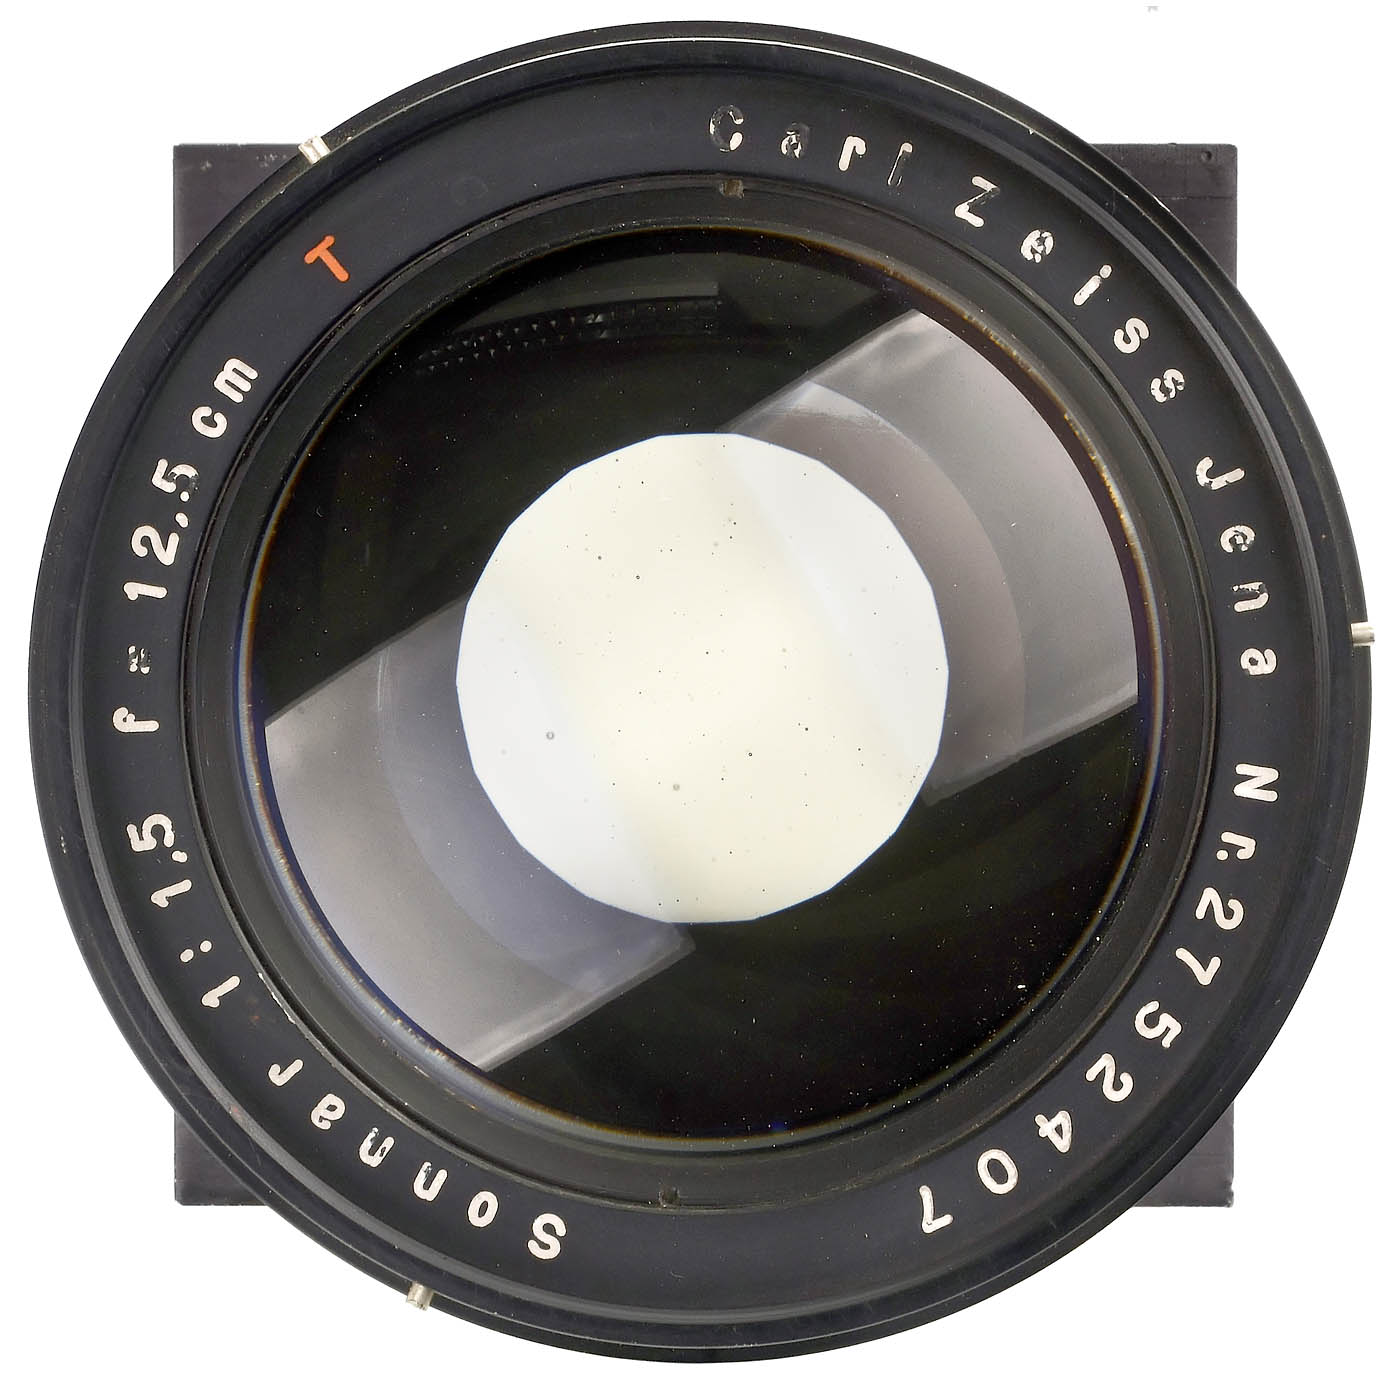 Sonnar 1.5/12.5 cm T Lens, 1942 onwards - Image 2 of 3